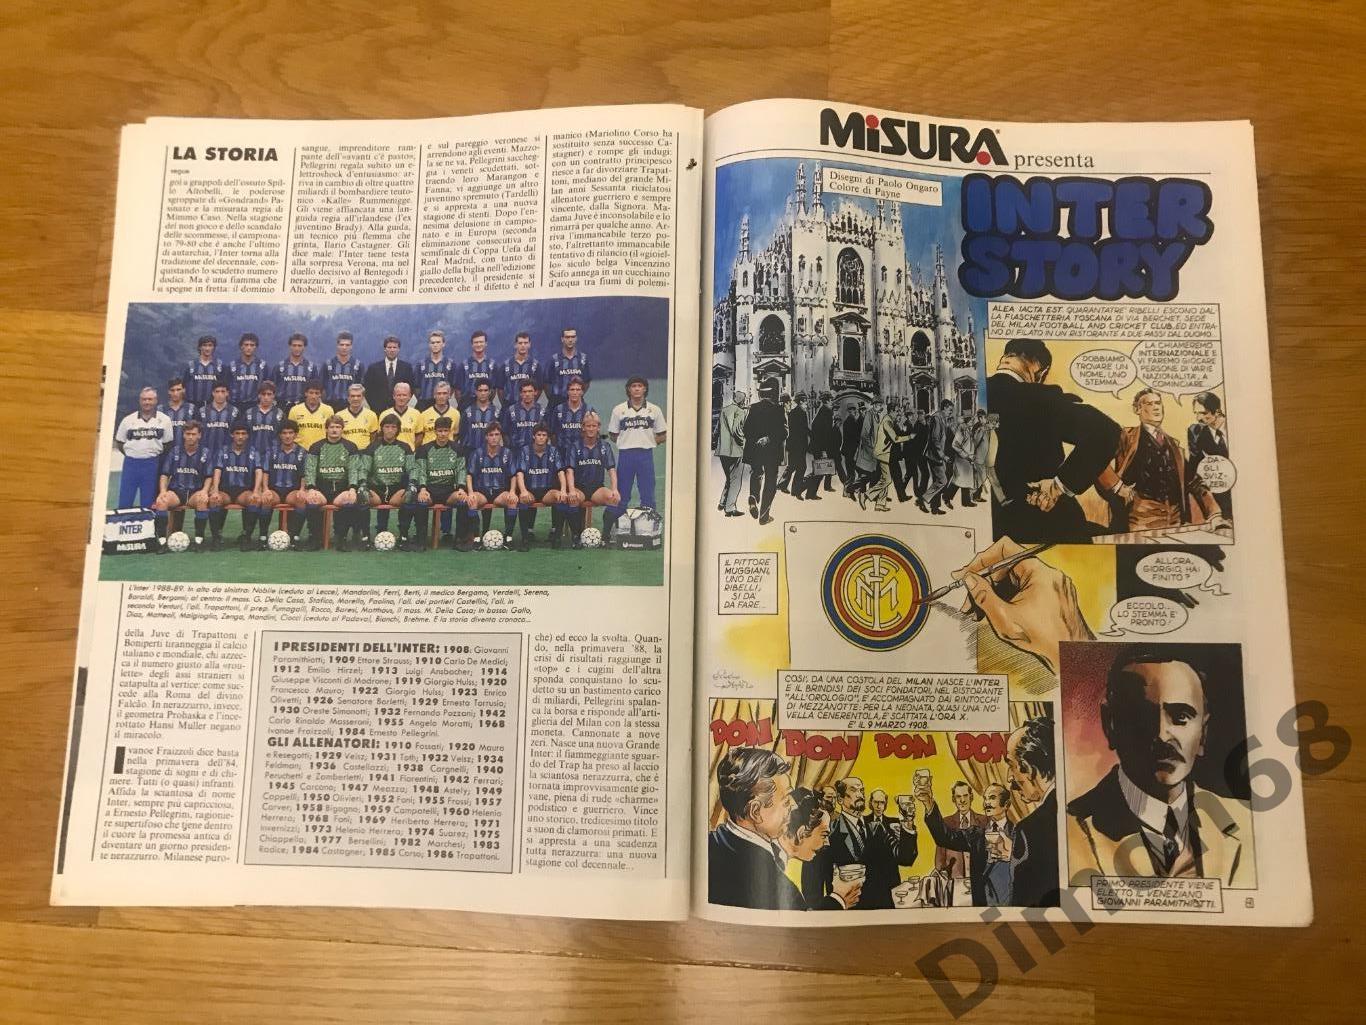 вкладыш из гуерин спортивно чемпионство интера сезон 1988/89г 7